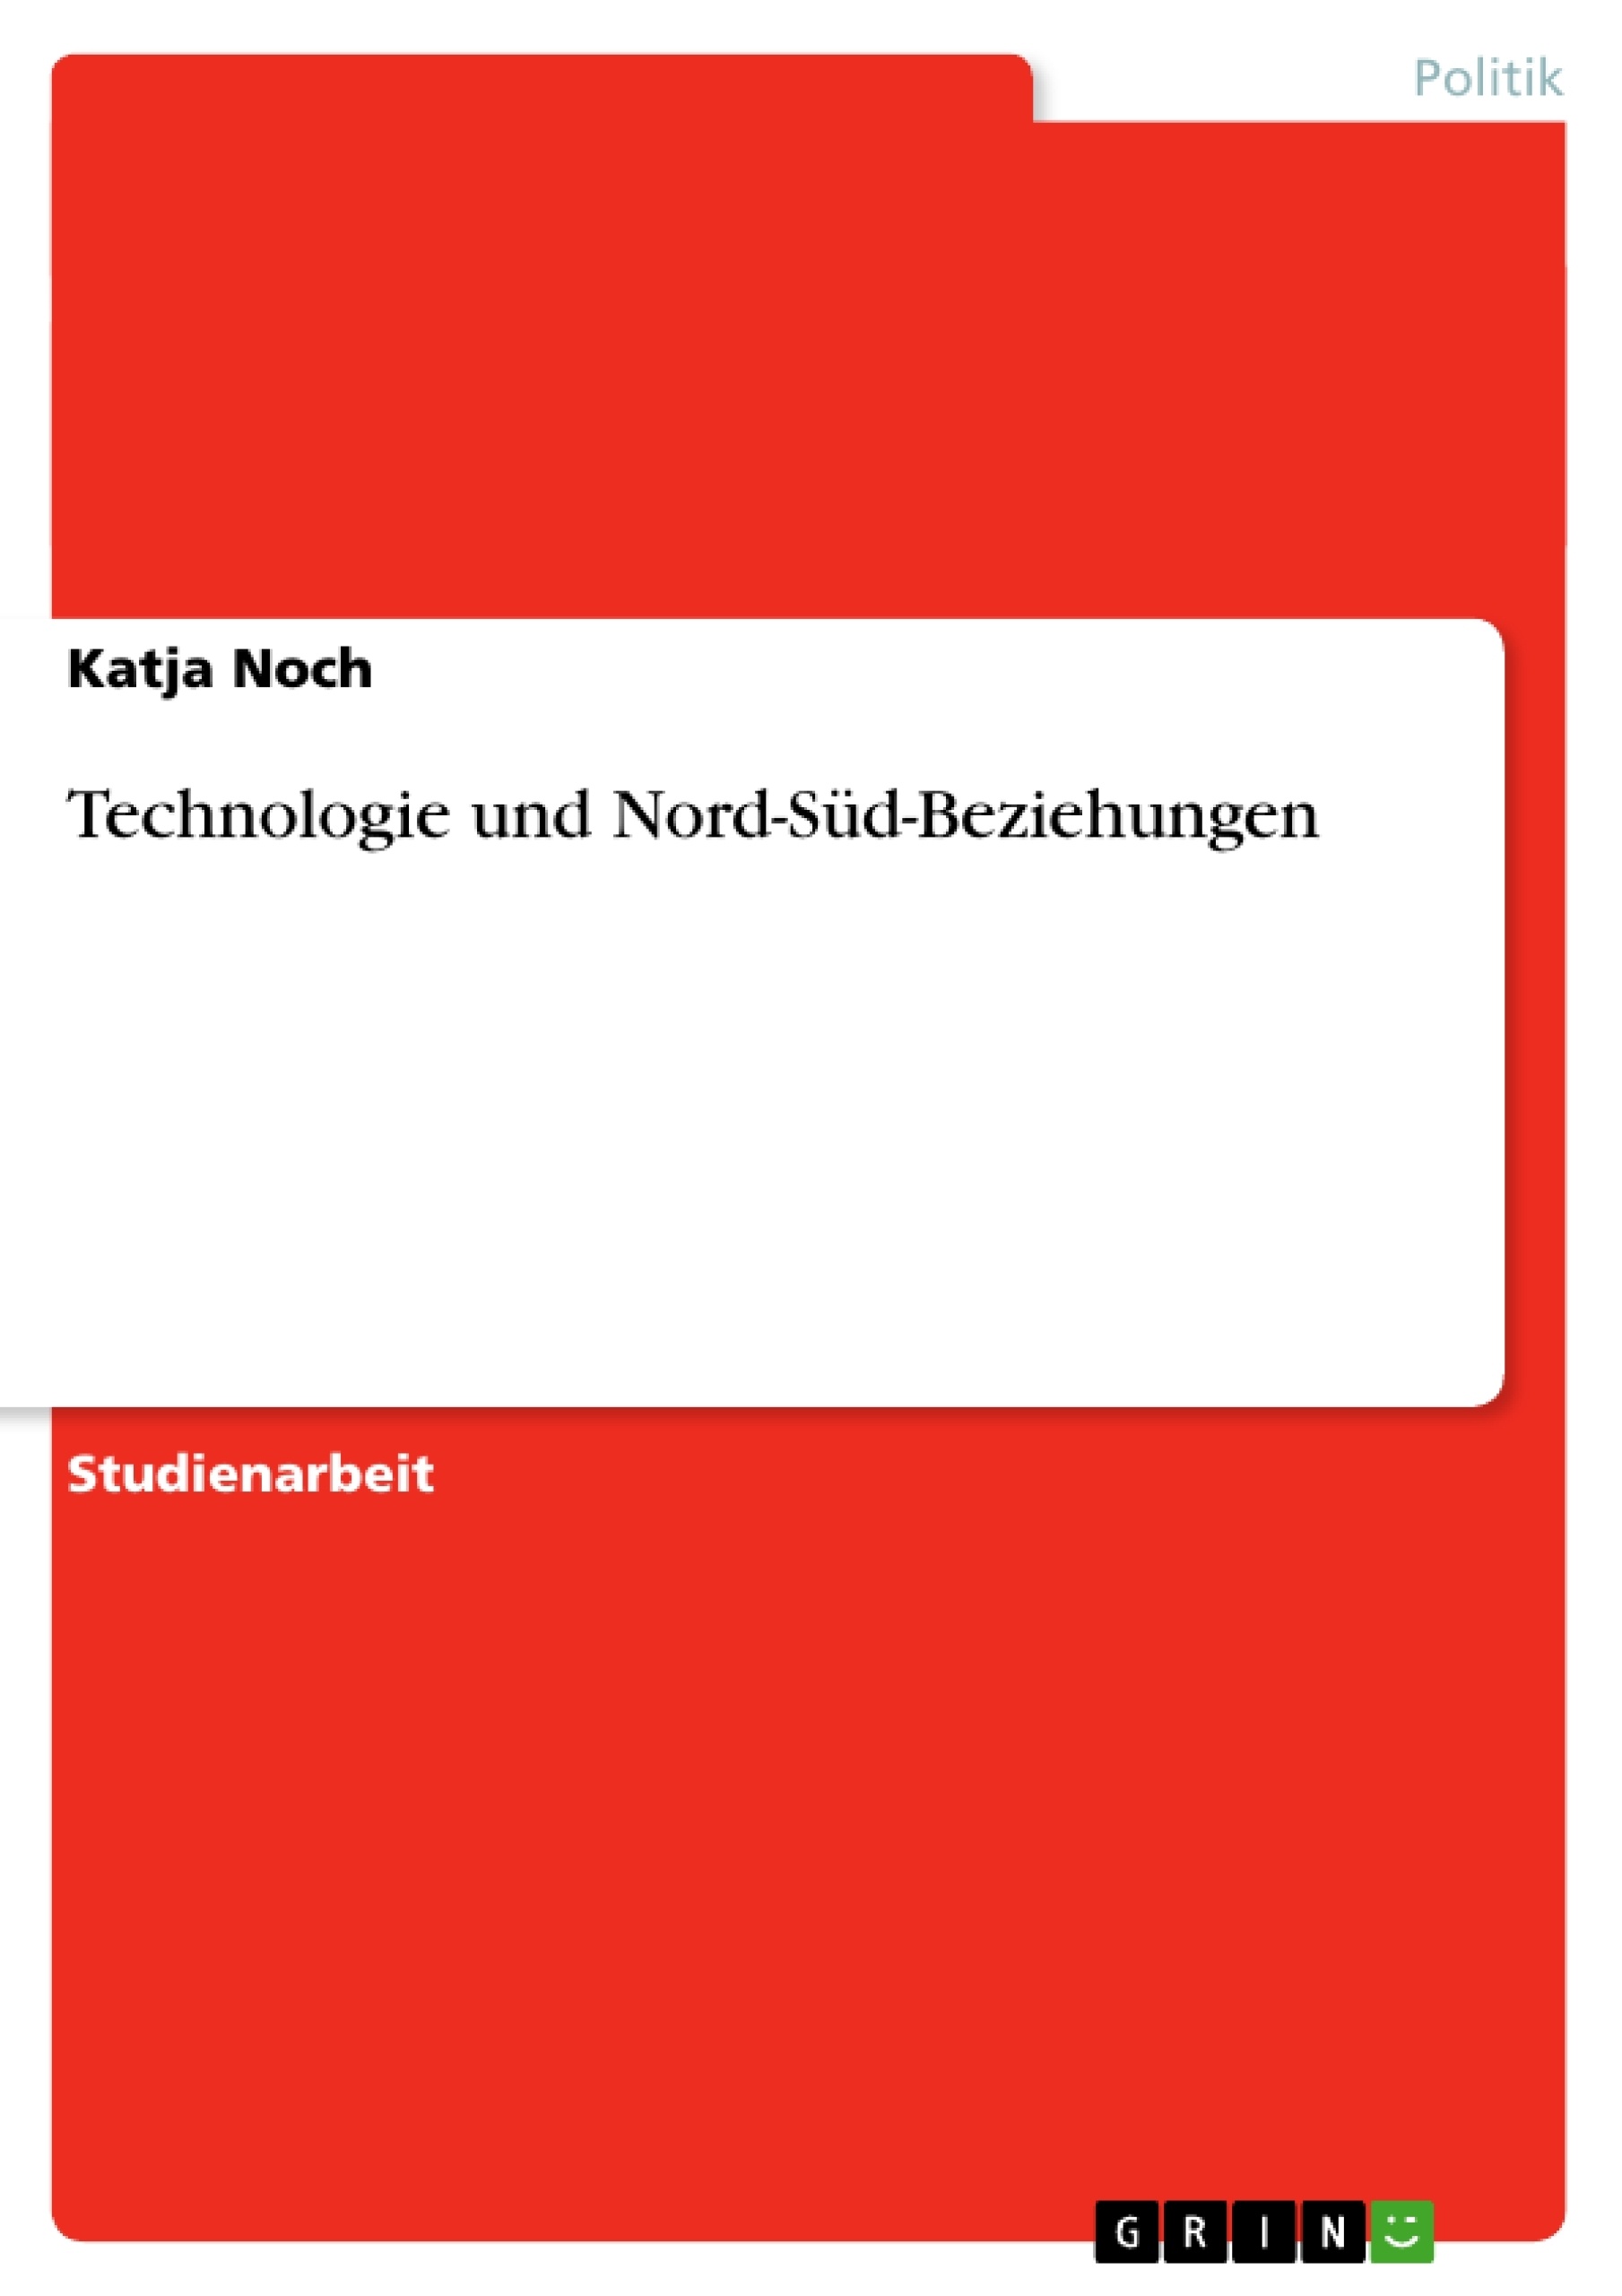 Title: Technologie und Nord-Süd-Beziehungen